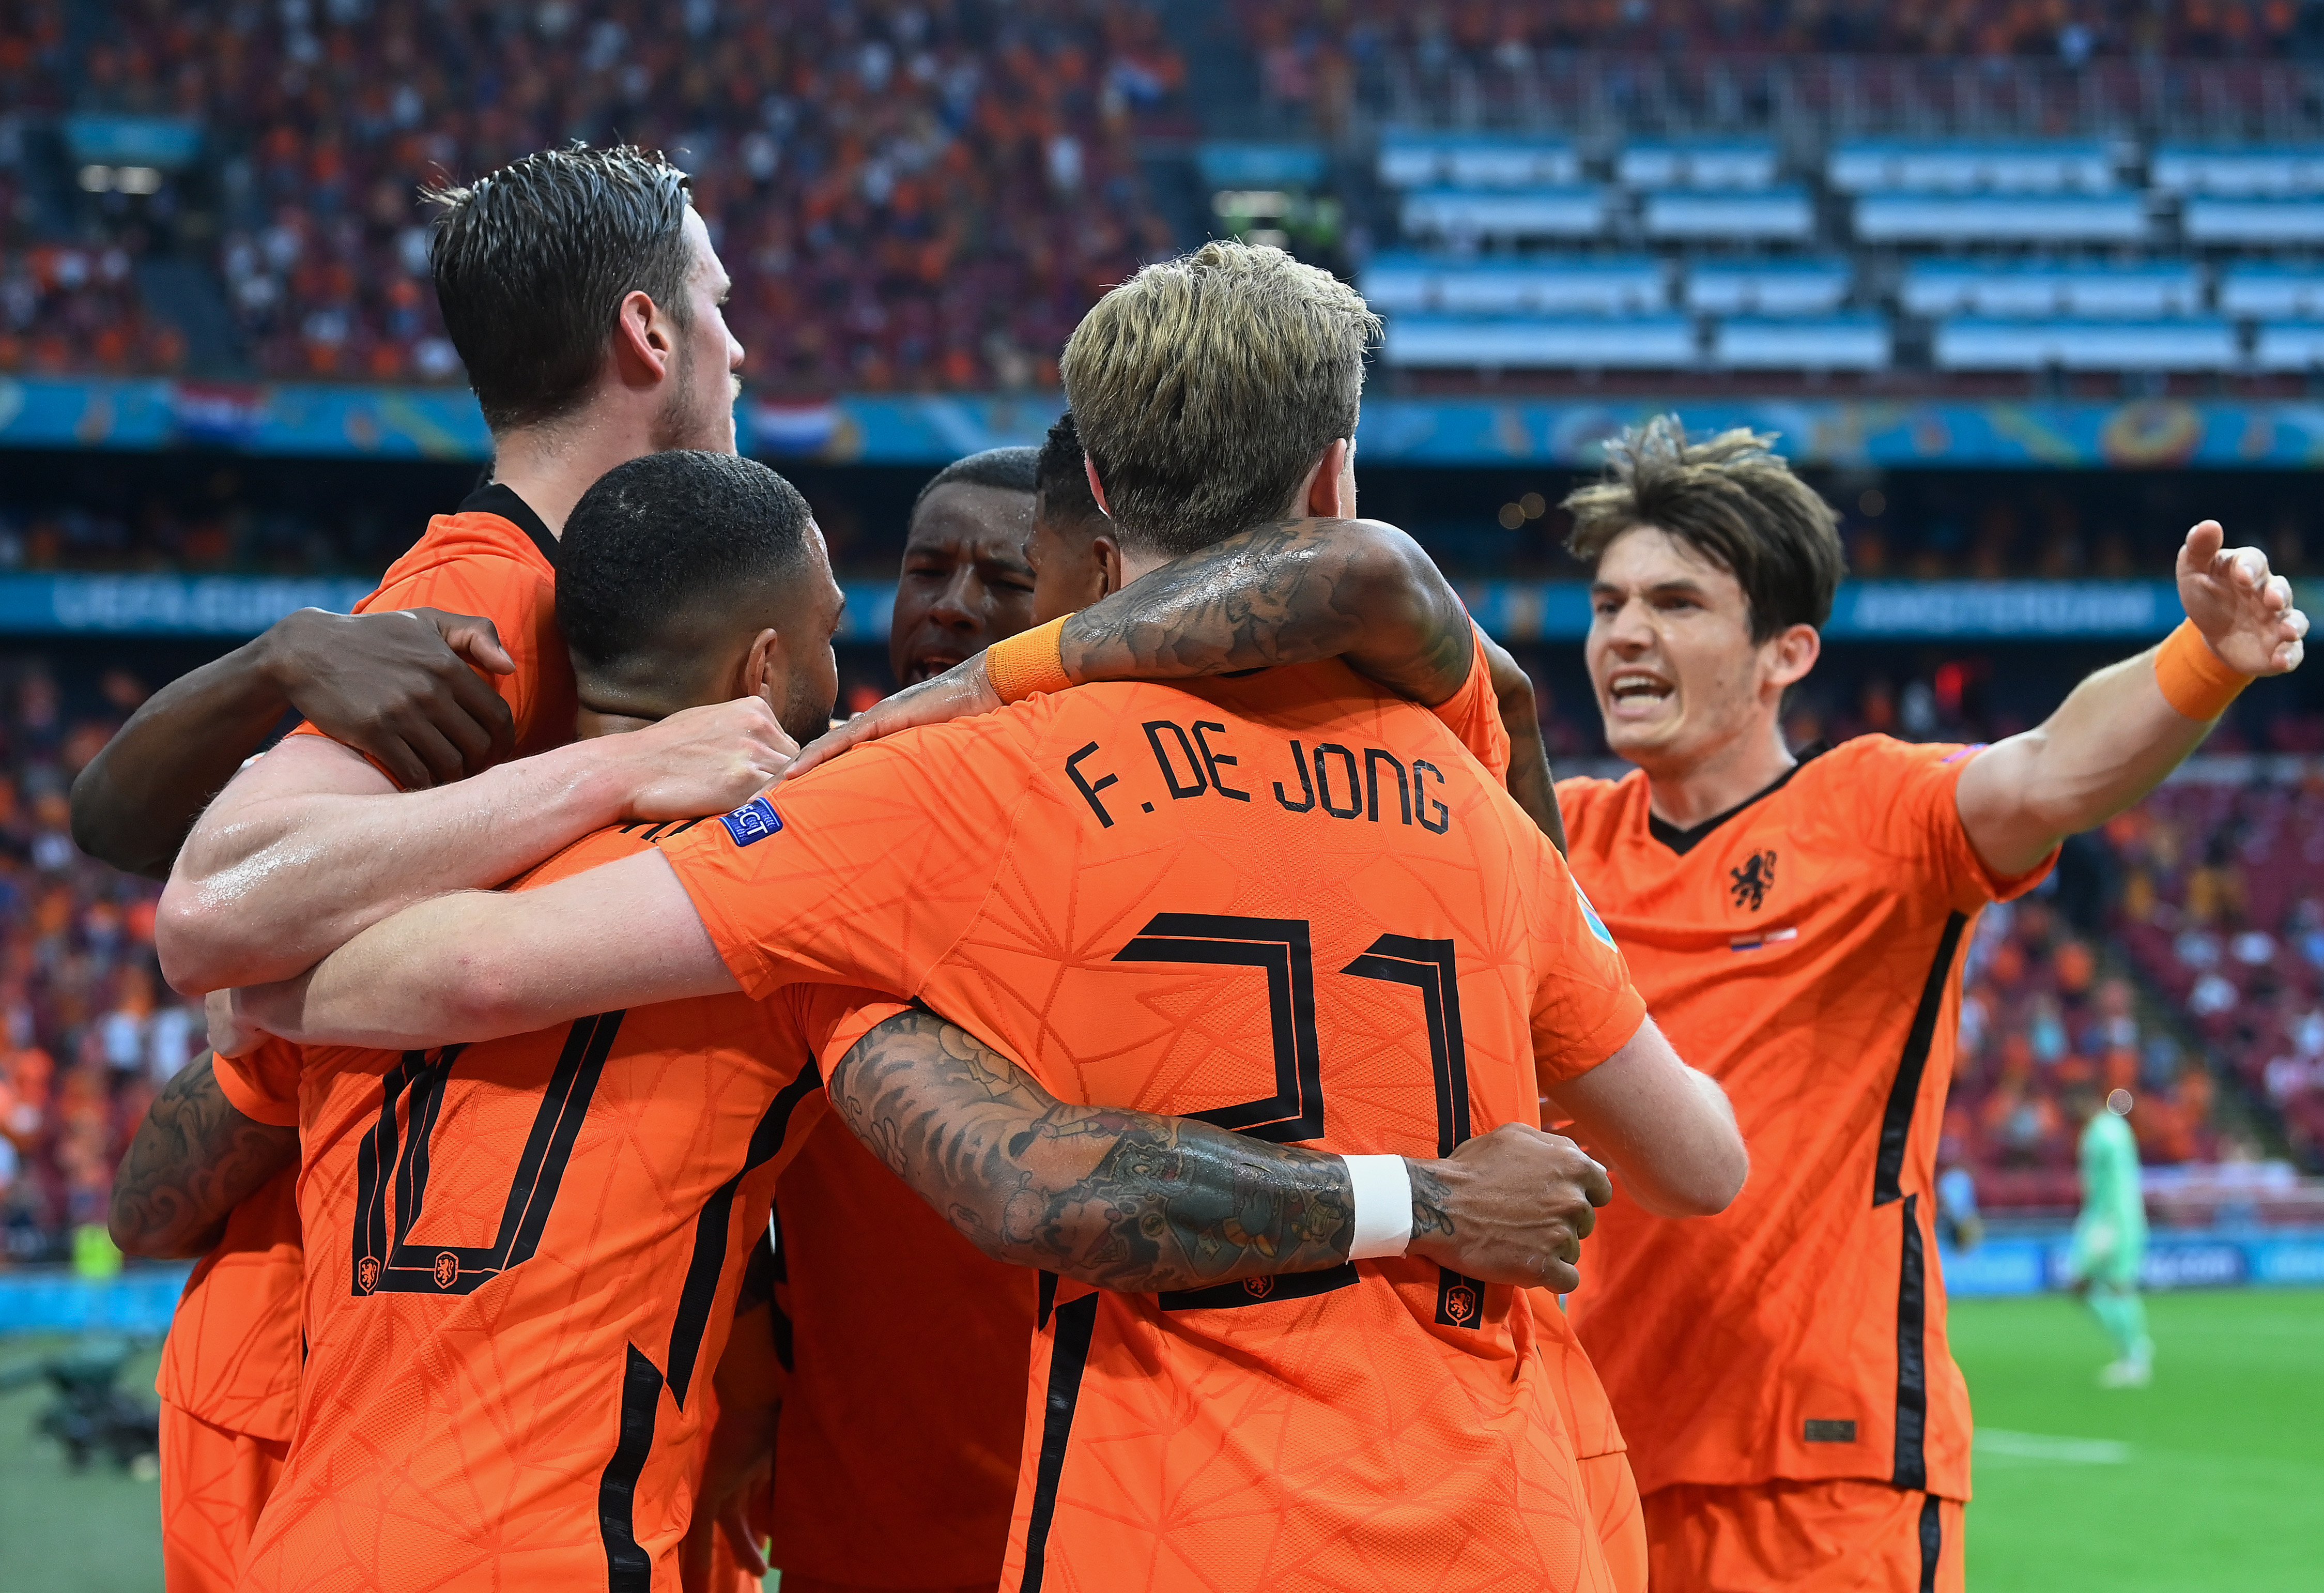 Olanda - Austria 2-0, ACUM, în grupa C de la EURO 2020. Portocala mecanică face spectacol și ratează ocazii uriașe